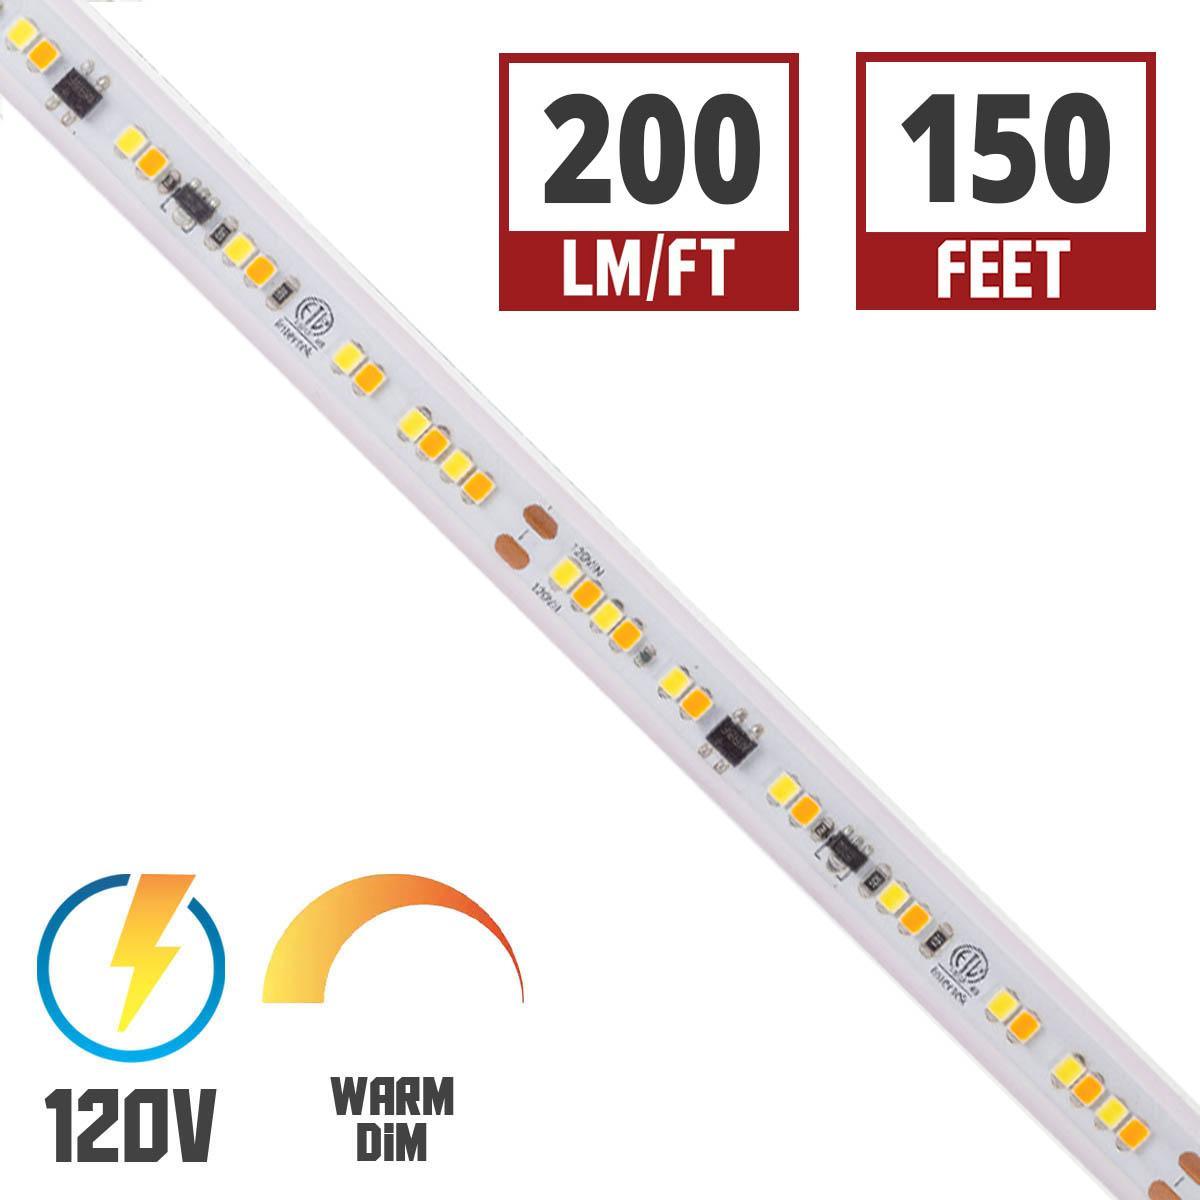 Hybrid 3 120V LED Strip Light, 150Ft Reel, 200 Lumens per Ft, Warm Dim 3000K to 1800K - Bees Lighting